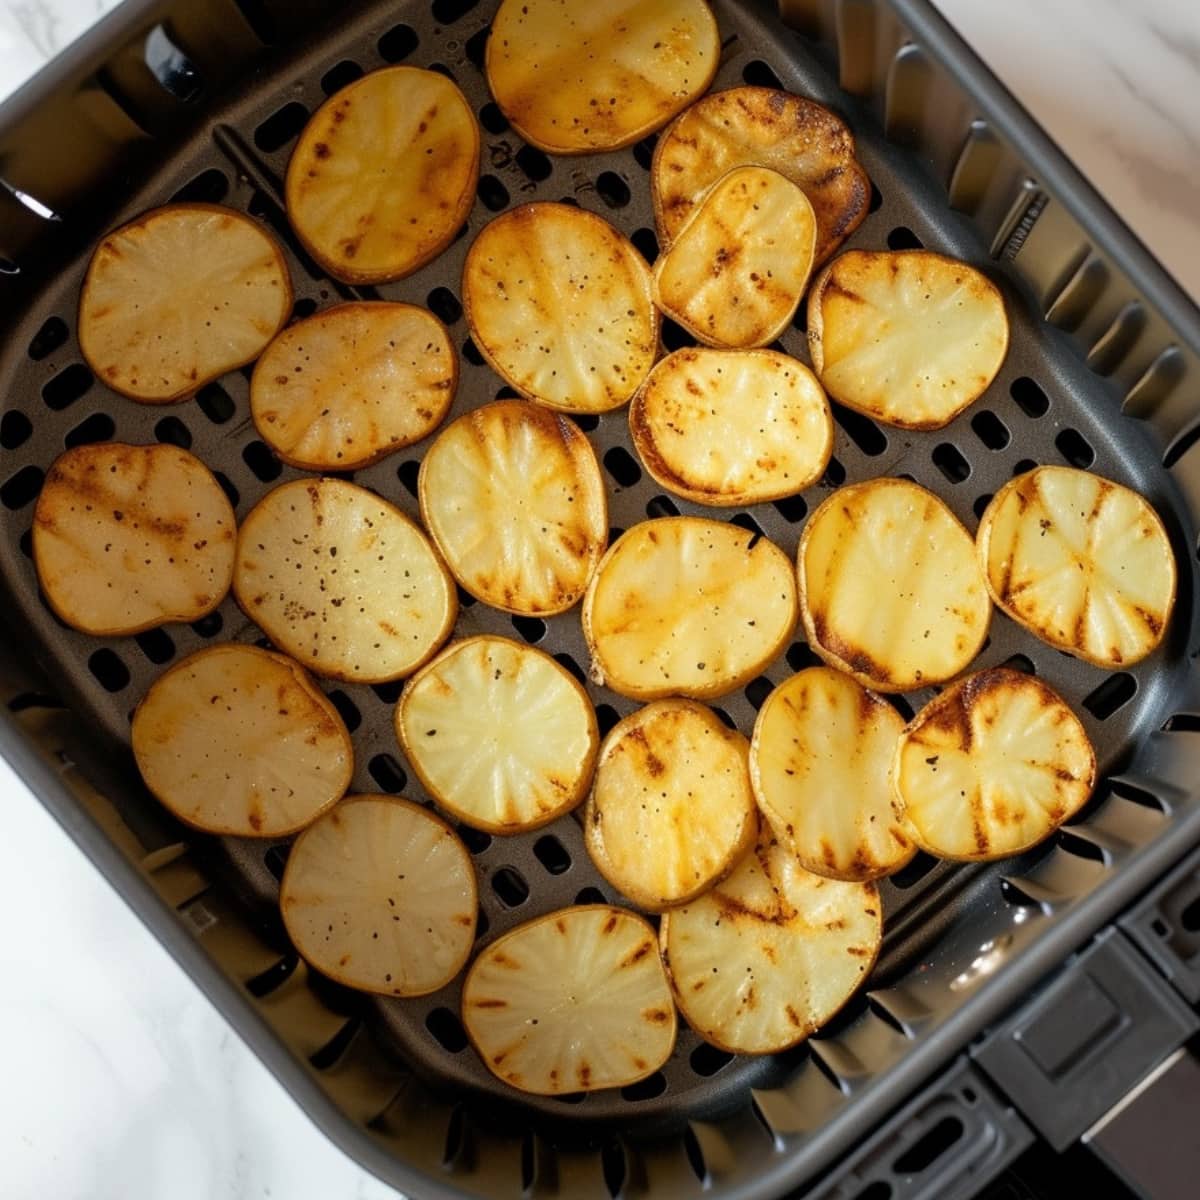 Potato chips inside an air fryer